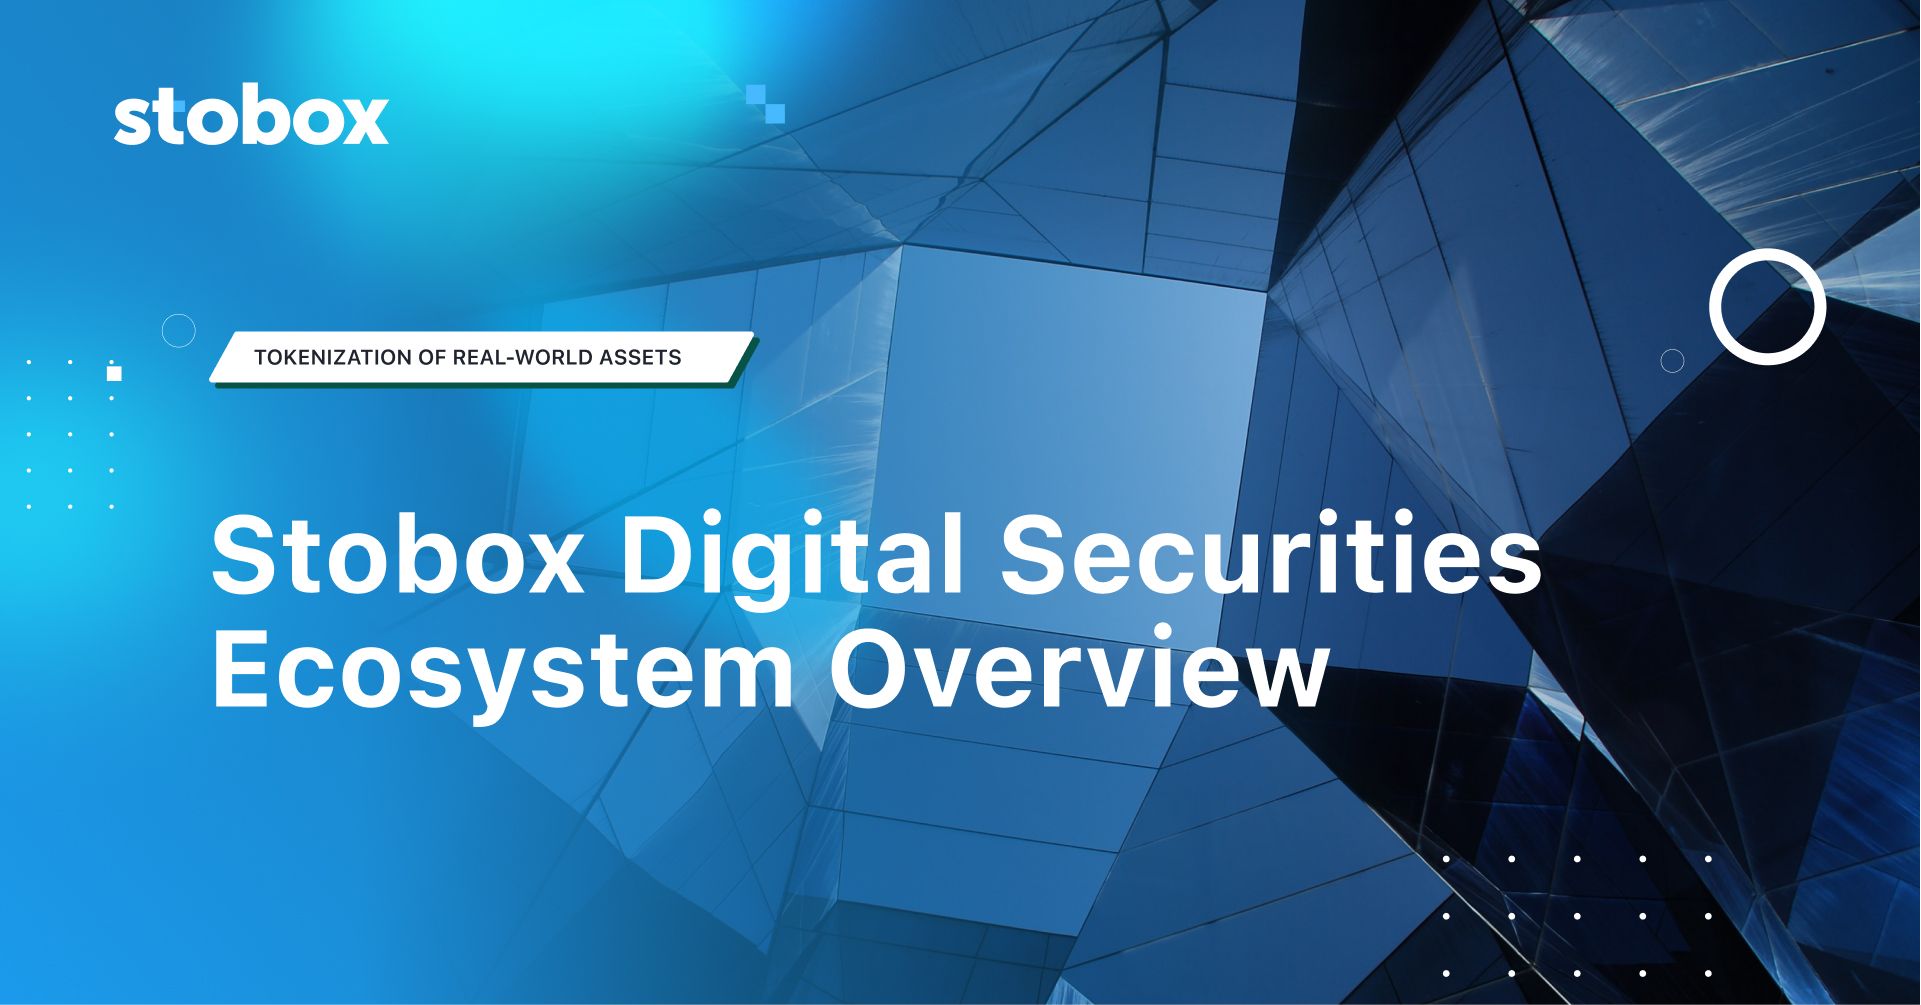 Stobox Digital Securities Ecosystem Overview